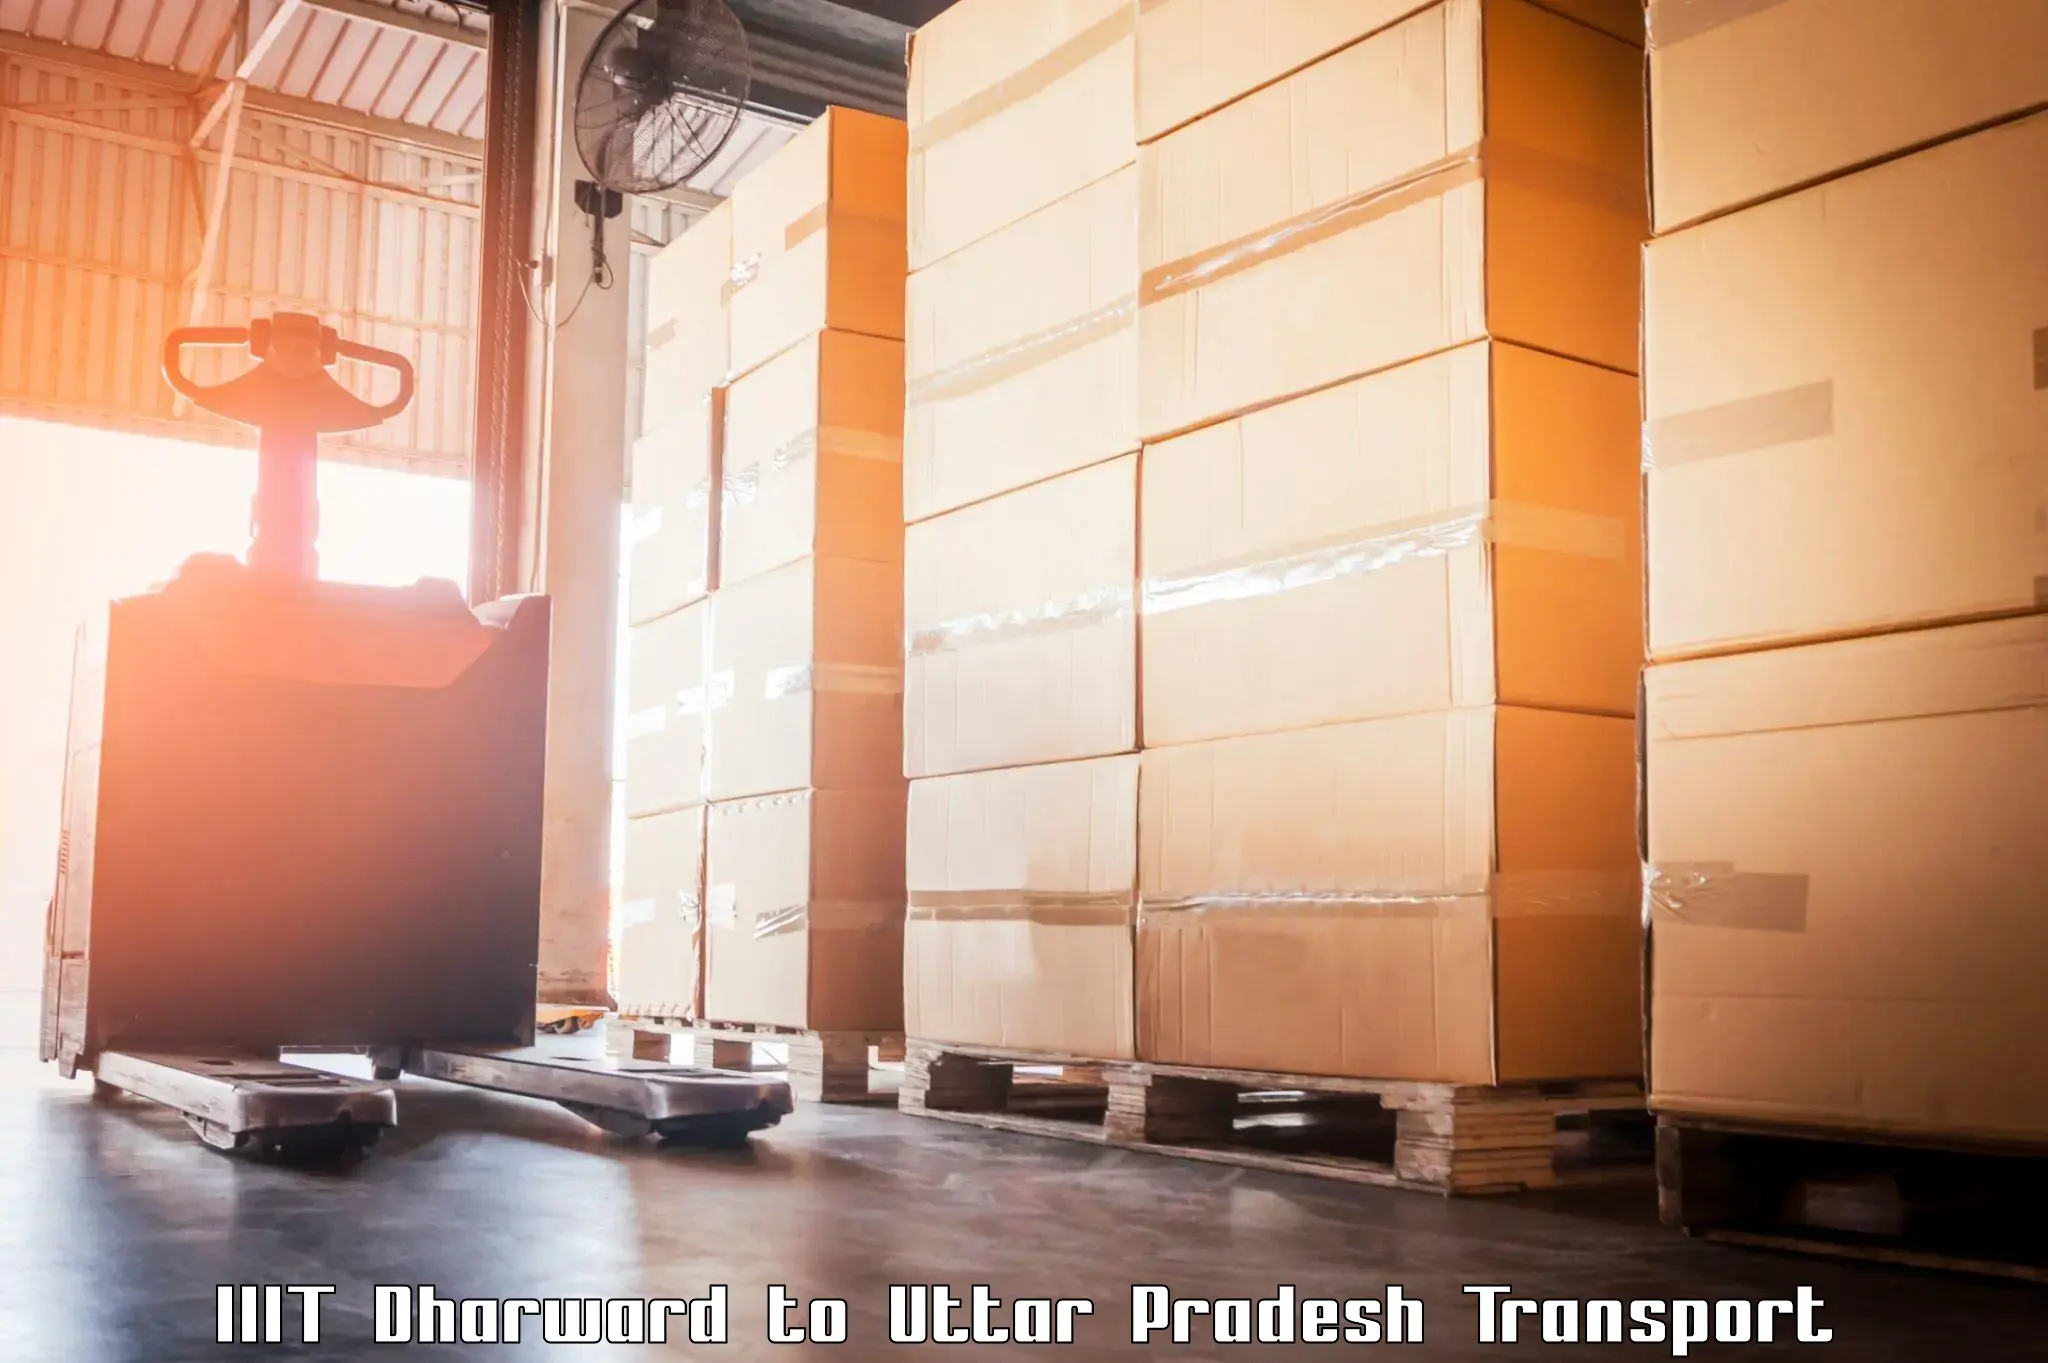 Truck transport companies in India IIIT Dharward to IIT Varanasi